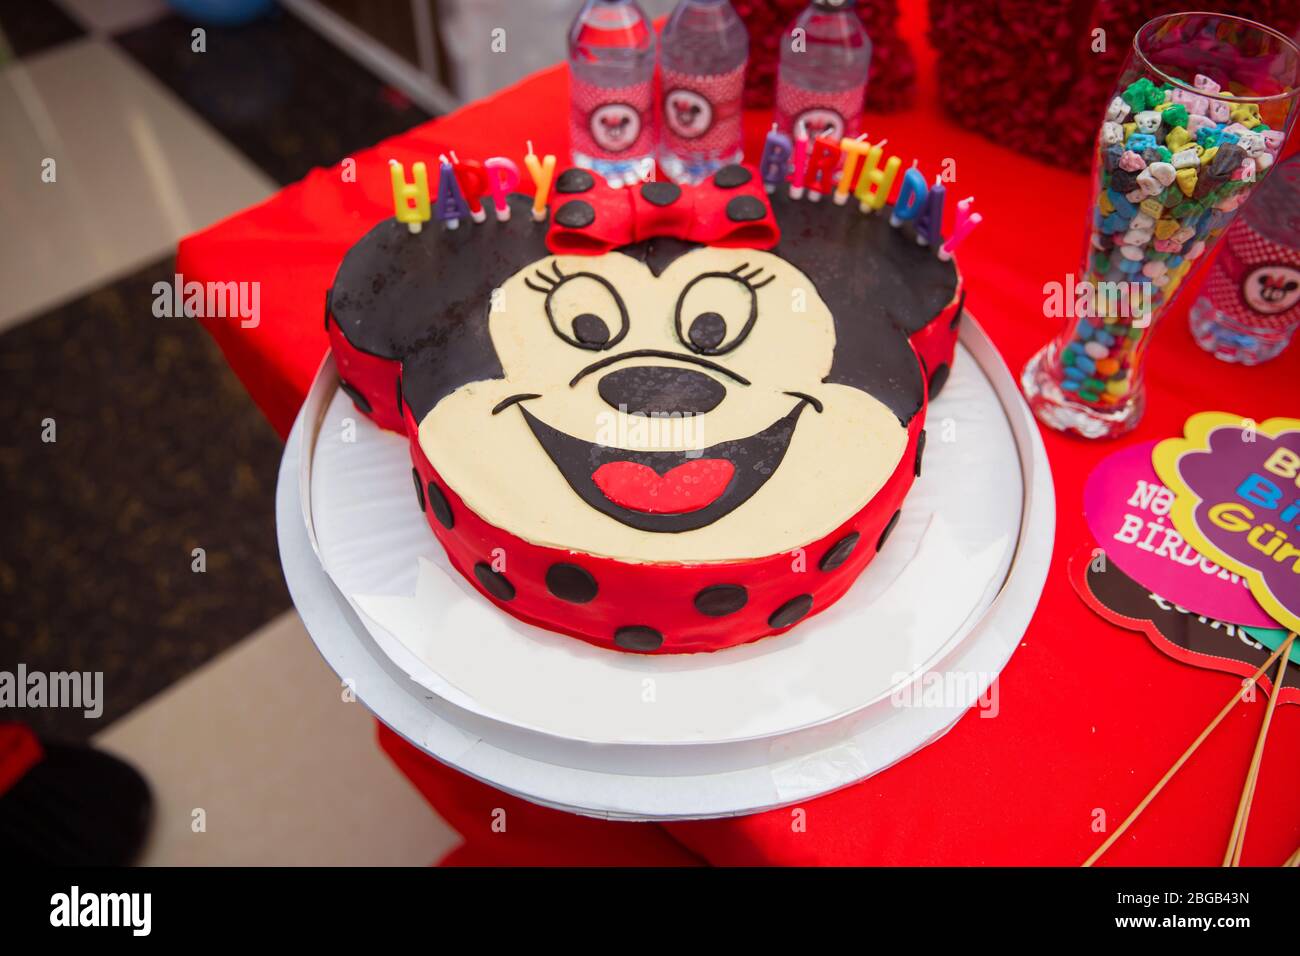 Joyeux Anniversaire 10 Gateaux Mickey Mouse Gateau Rouge Design A Theme Des Desserts Sur Le Theme De Mickey Mouse Evenement Thematique Walt Disney Pour 10 Ans Photo Stock Alamy